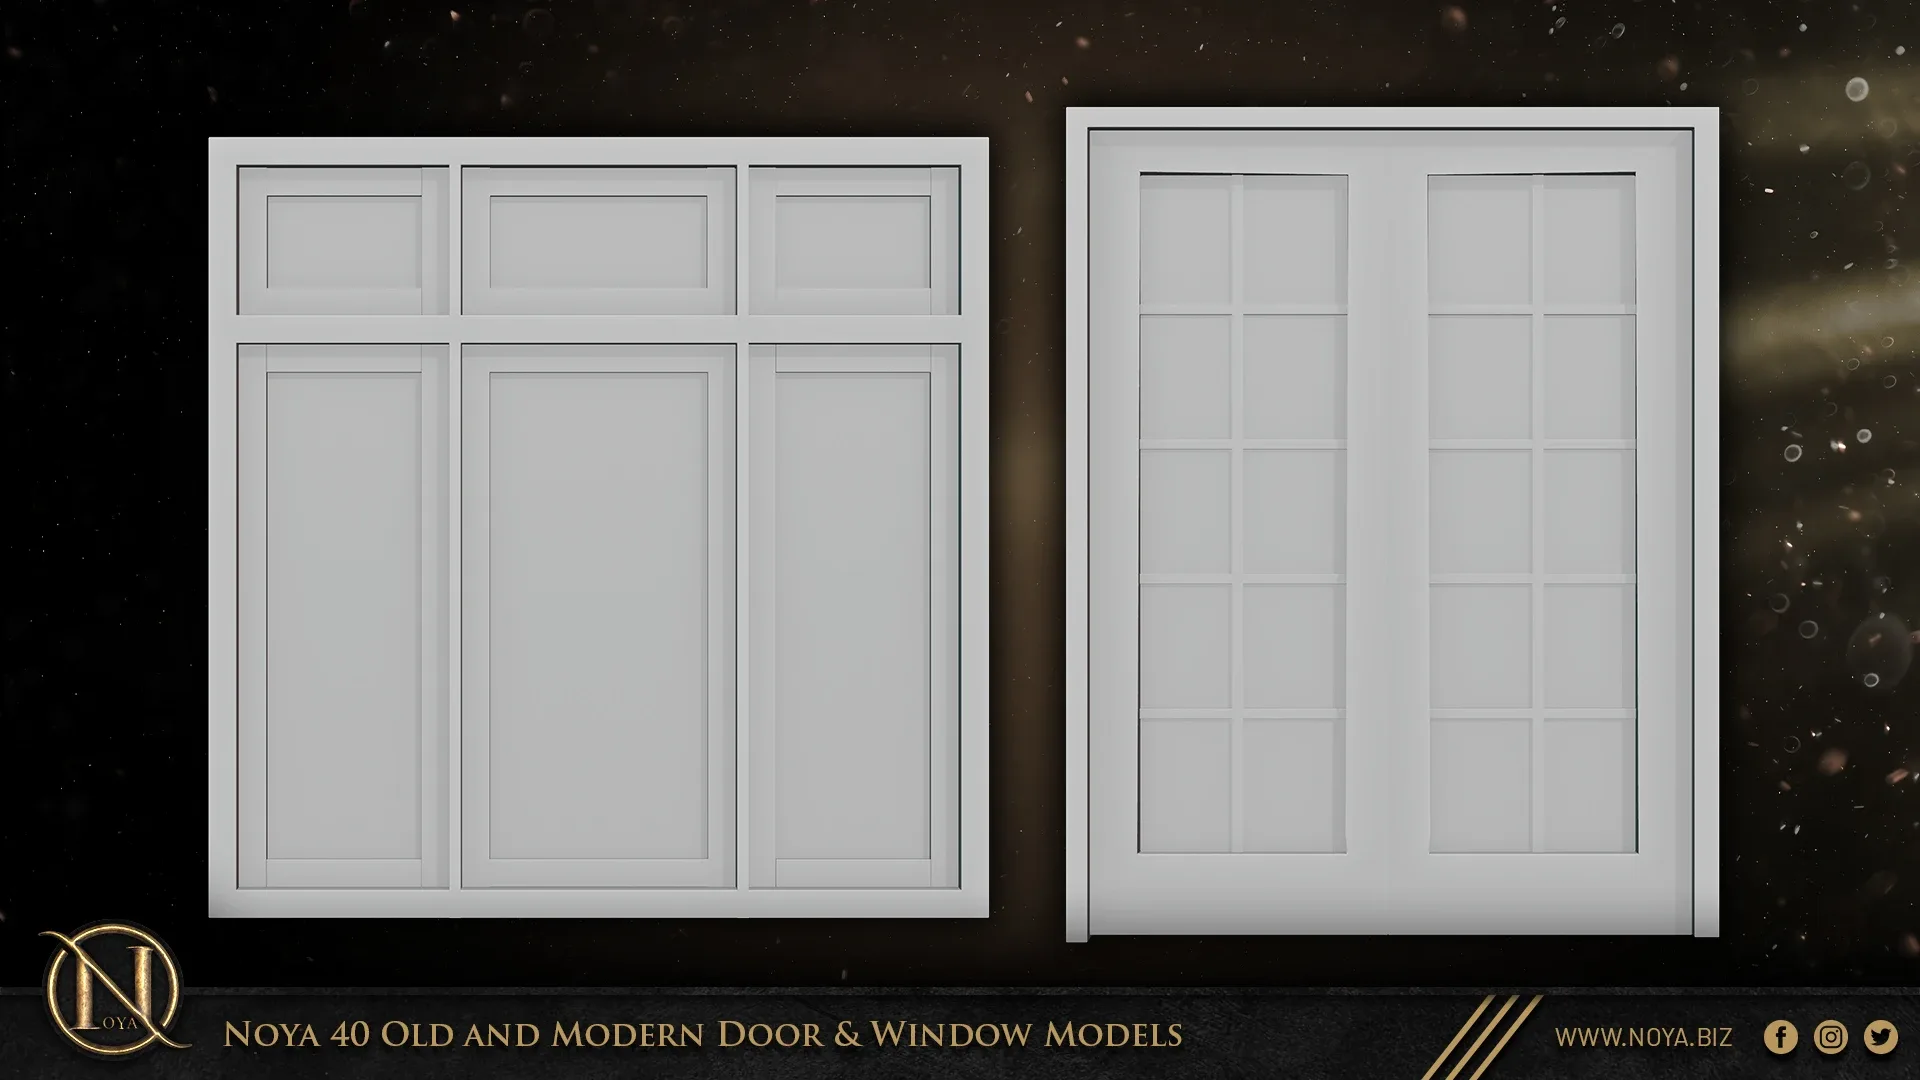 Noya 40 Old and Modern Door & Window Models